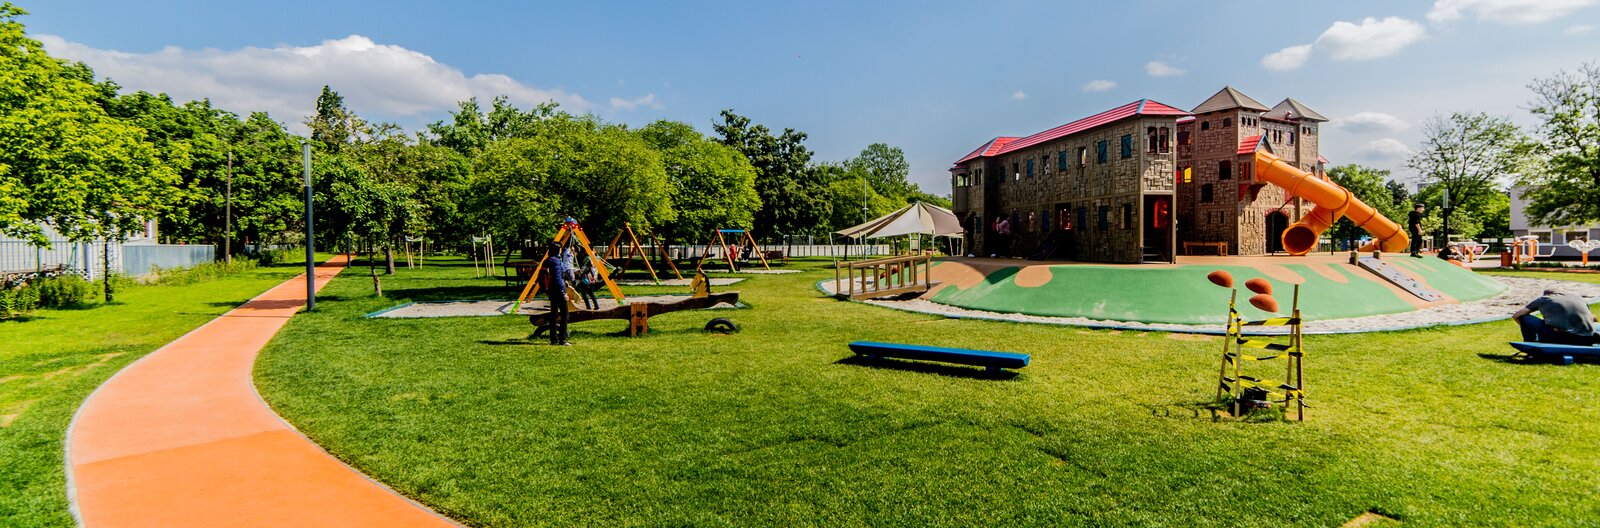 5 frissen felújított budapesti park hűsölni, edzeni vagy játszóterezni